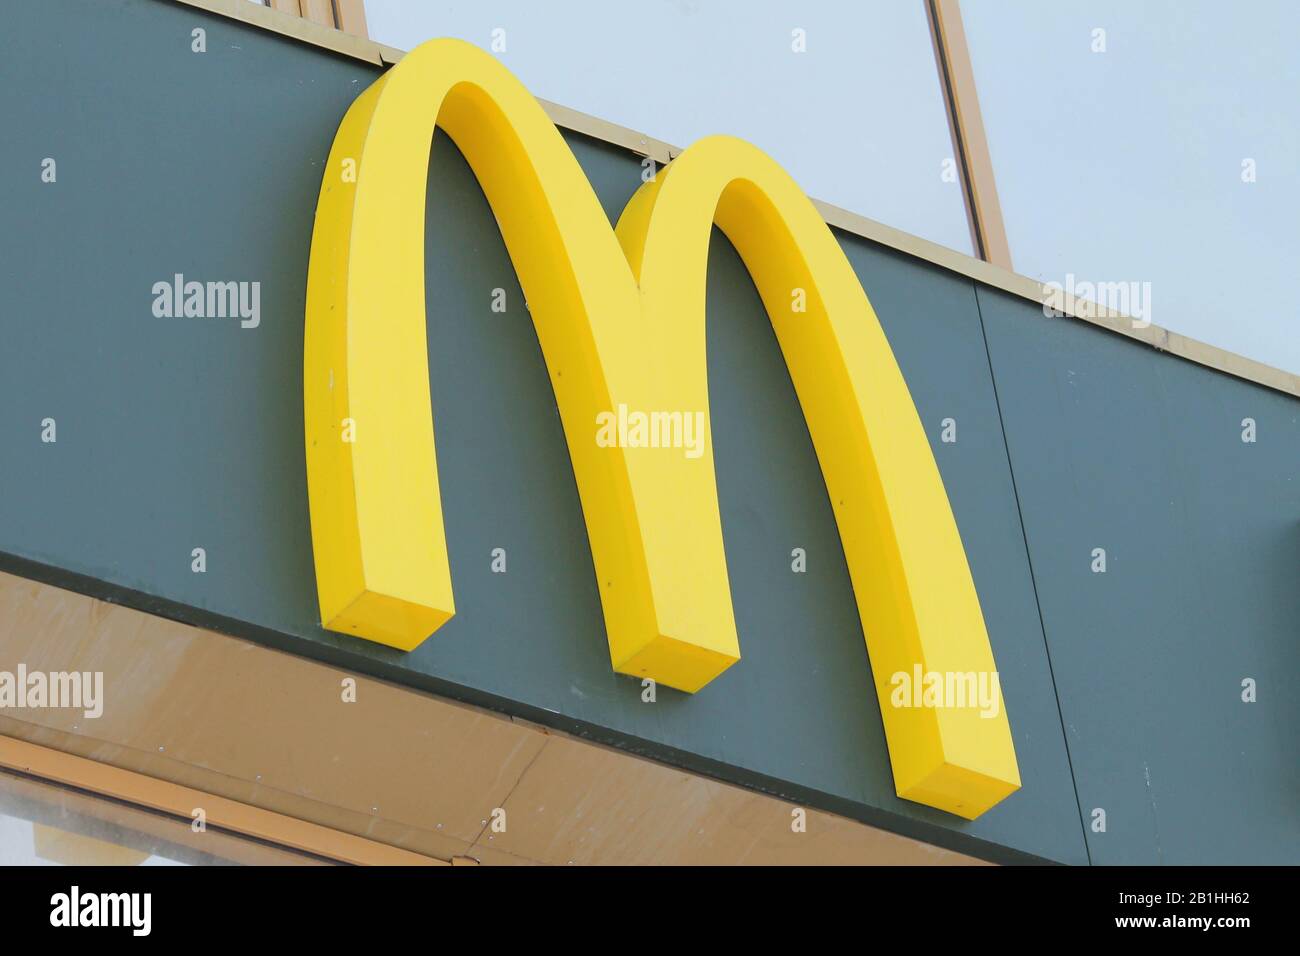 29.12.2019 Syktyvkar, Russland, gelber Großbuchstabe M, Fast-Food-Restaurant mcdonalds Signboard. Stock-Foto für Web und Print. Stockfoto